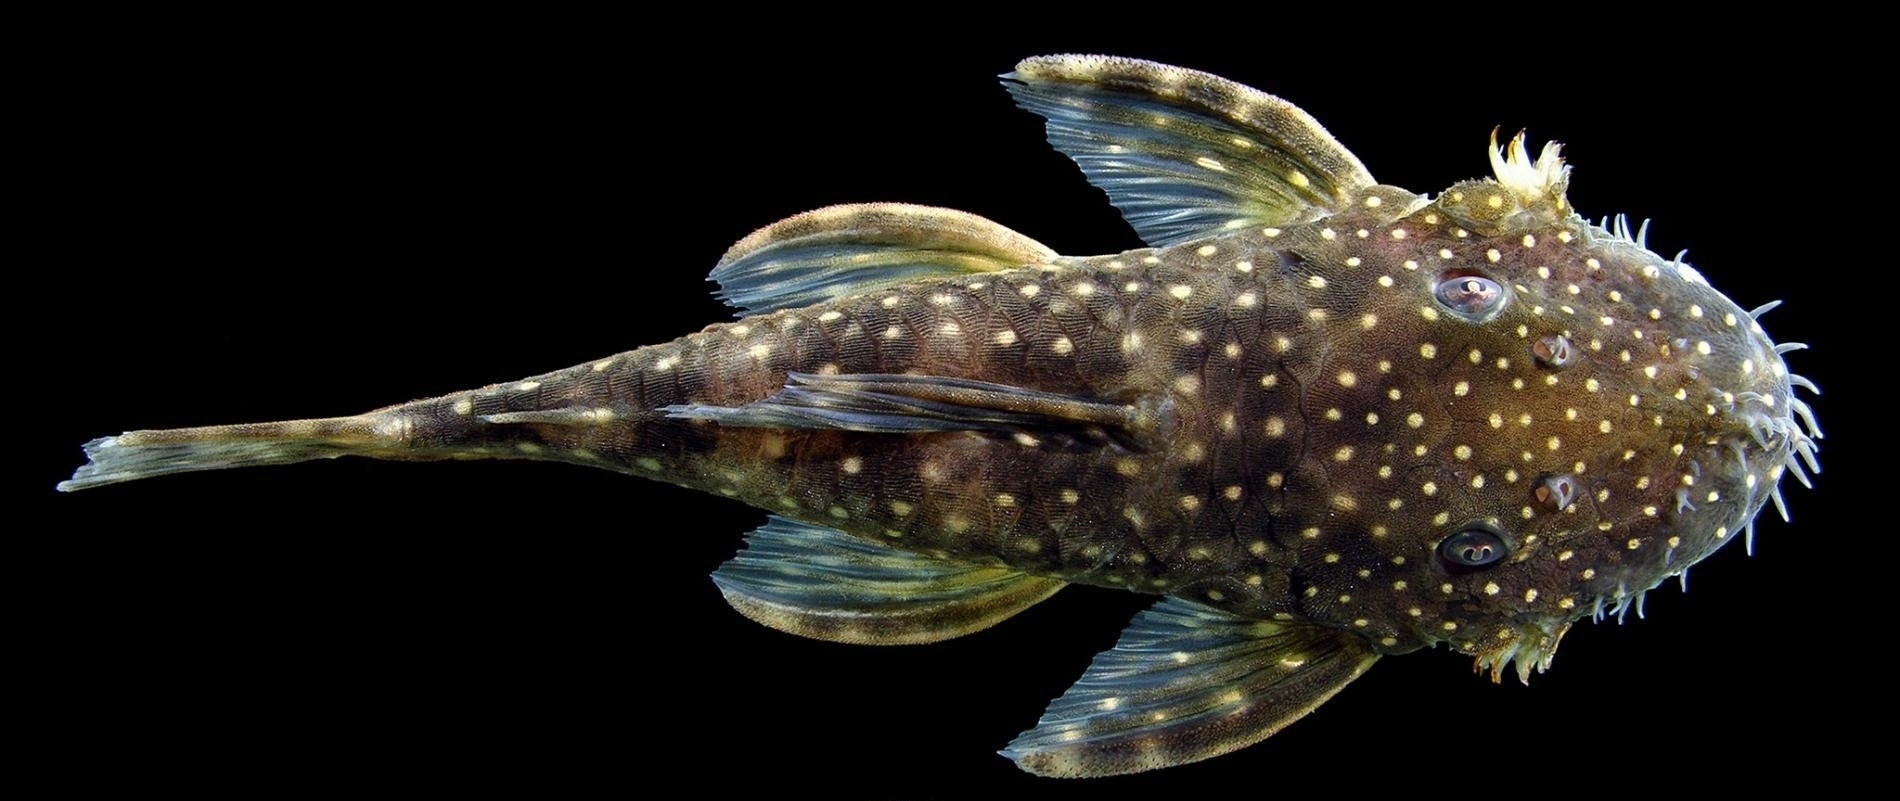 這種學名為<i>Ancistrus leoni</i>的魚類是萊絲莉．迪蘇沙（Lesley de Souza）與合作者新發現的鉤鯰，他們共發現六種新的鉤鯰。這種魚以她的已故同事奧斯卡．里昂．馬塔（Oscar Léon Mata）命名。 PHOTOGRAPHIC COMPOSITE BY JONATHAN W. ARMBRUSTER, COURTESY THE FIELD MUSEUM